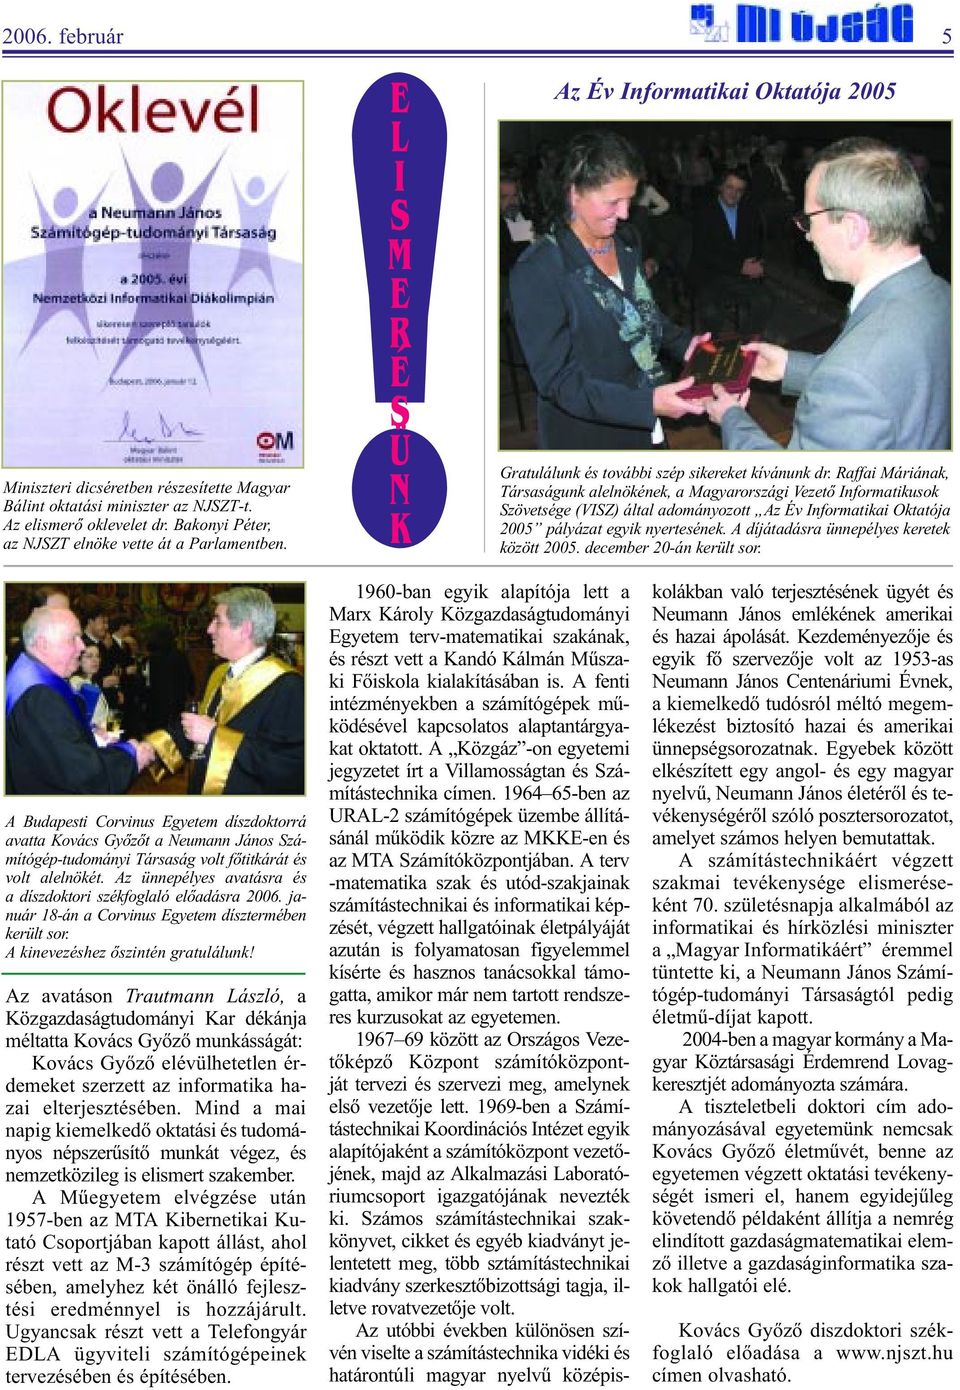 Raffai Máriának, Társaságunk alelnökének, a Magyarországi Vezetõ Informatikusok Szövetsége (VISZ) által adományozott Az Év Informatikai Oktatója 2005 pályázat egyik nyertesének.